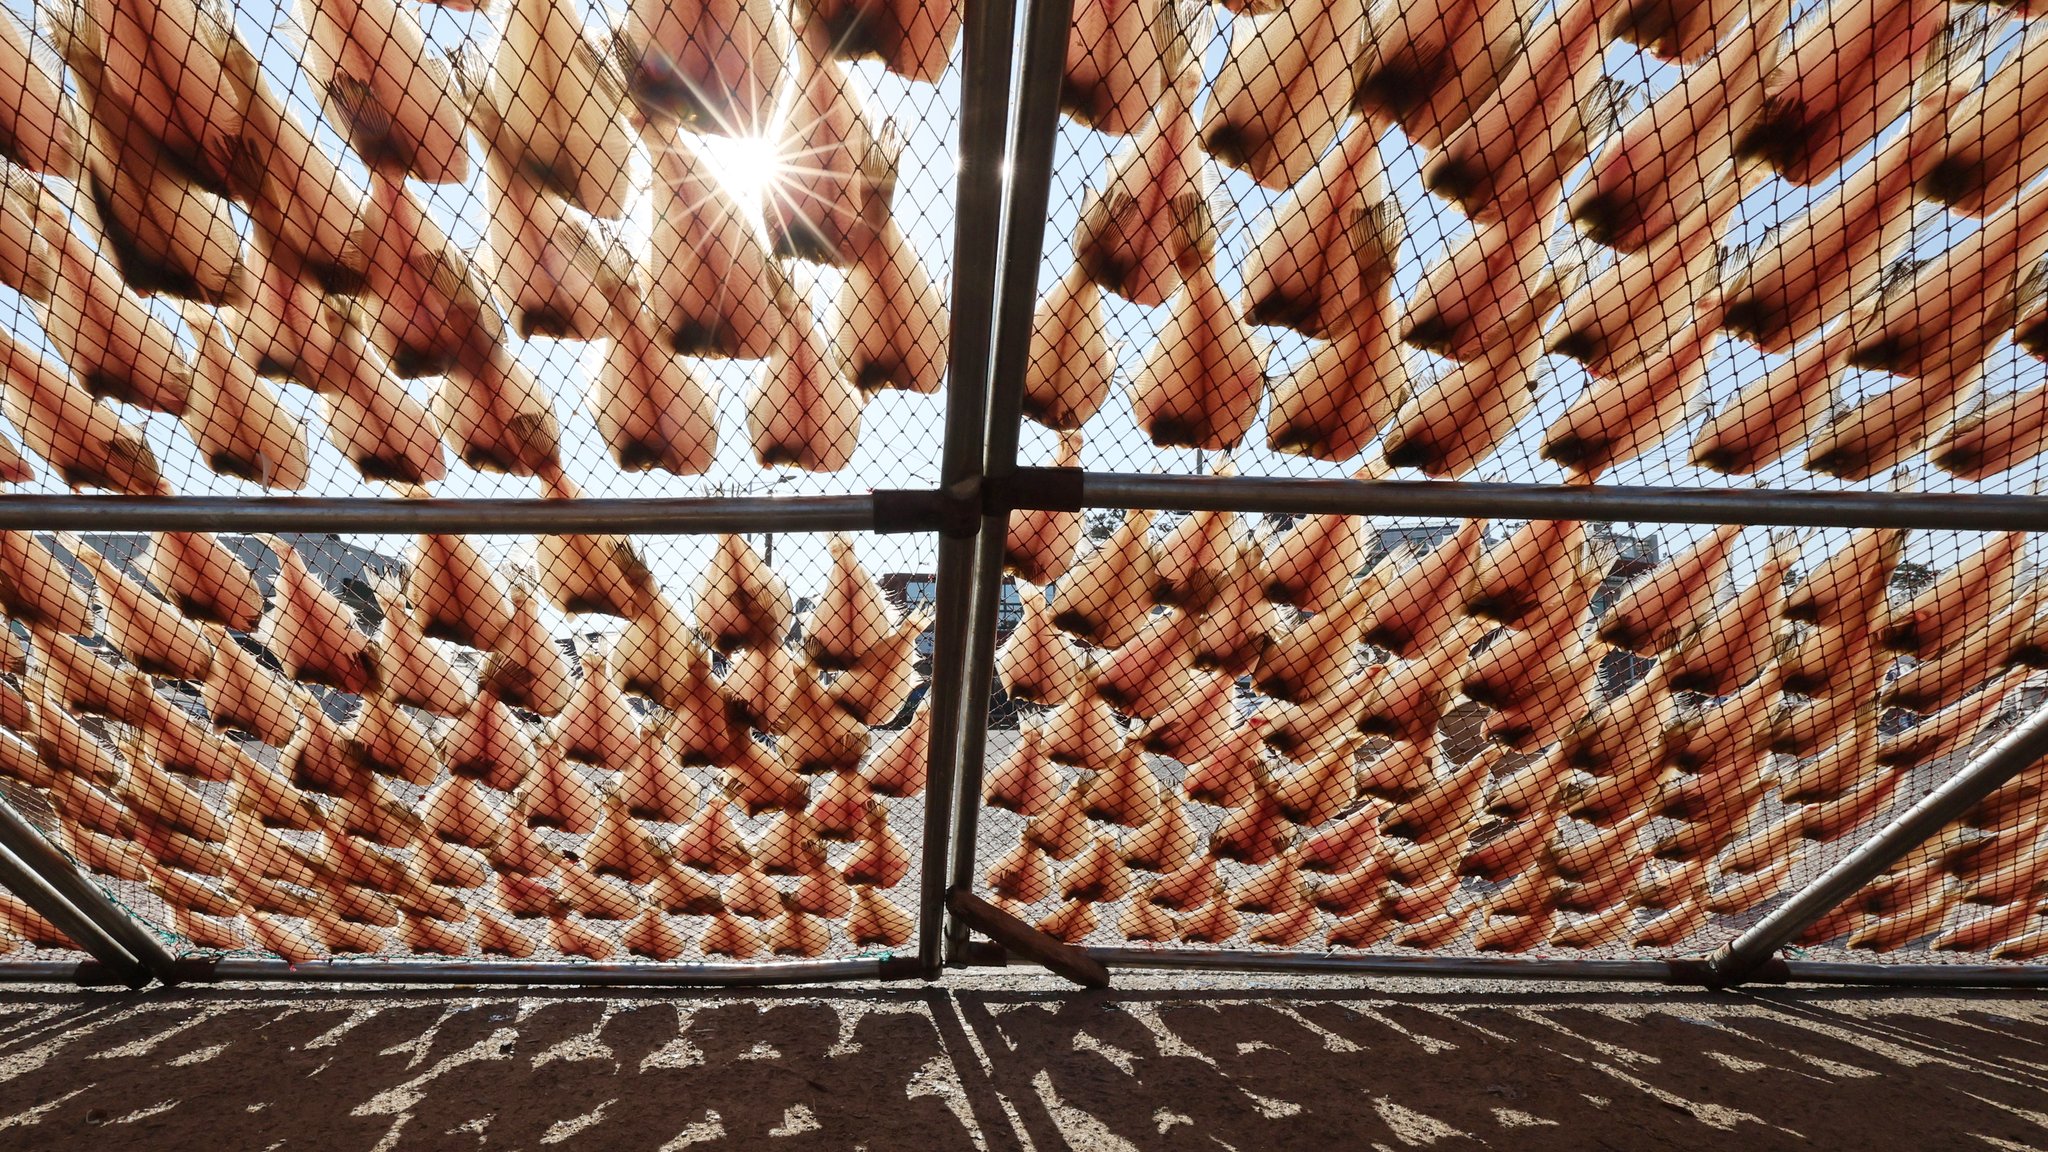 11일 부산 기장군 일광면 칠암마을 생선건조장에서 가지미가 햇볕에 건조되고 있다.송봉근 기자 20230111